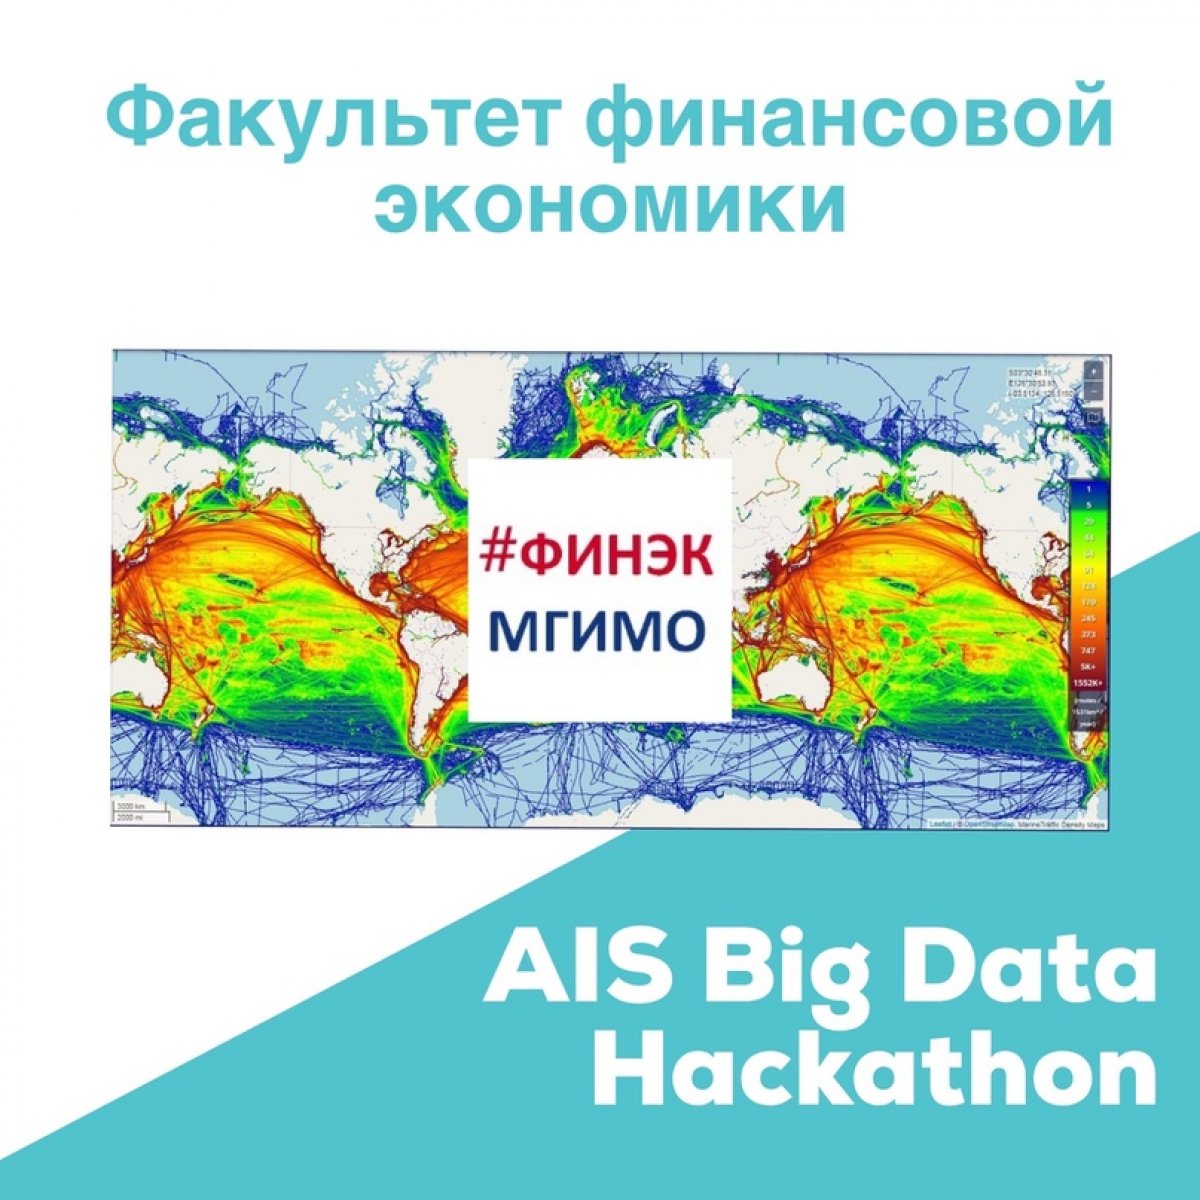 ❗️3-6 сентября 2020 года состоится AIS Big Data Hackathon, организованный в рамках IV международной конференции ООН по использованию больших данных в статистике